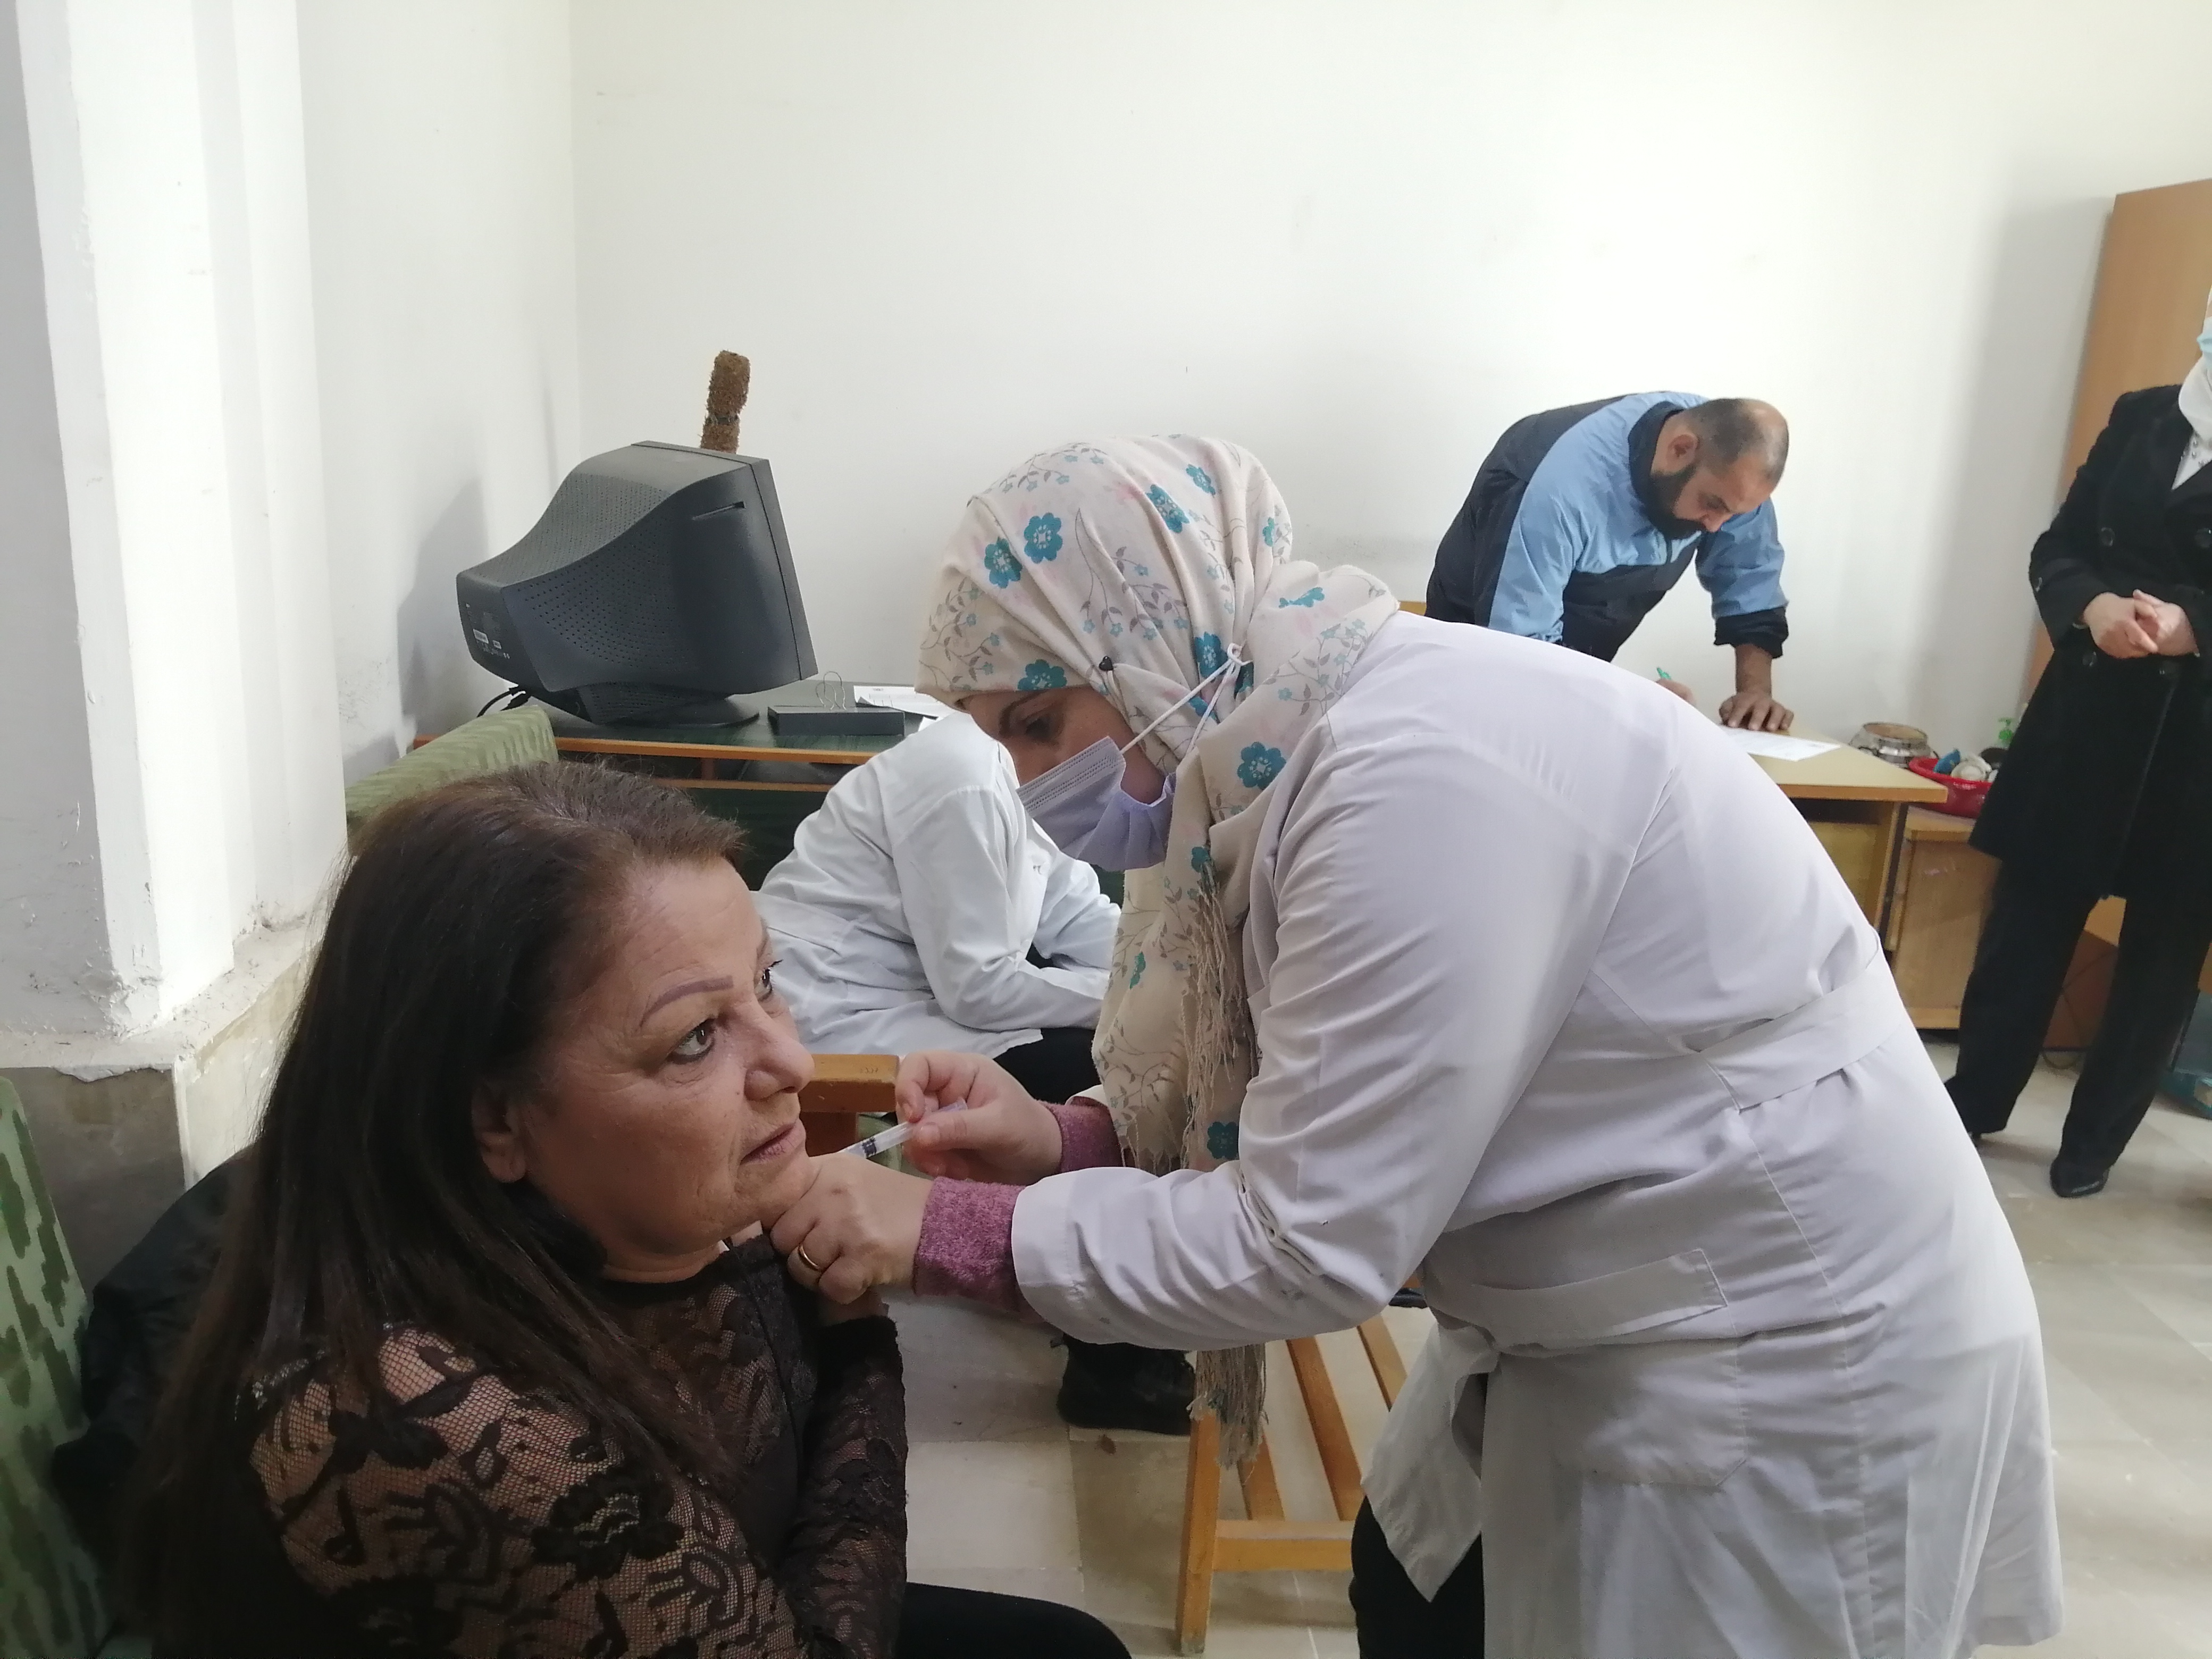  اللقاح ضد فيروس كورونا متواصلة في جامعة تشرين